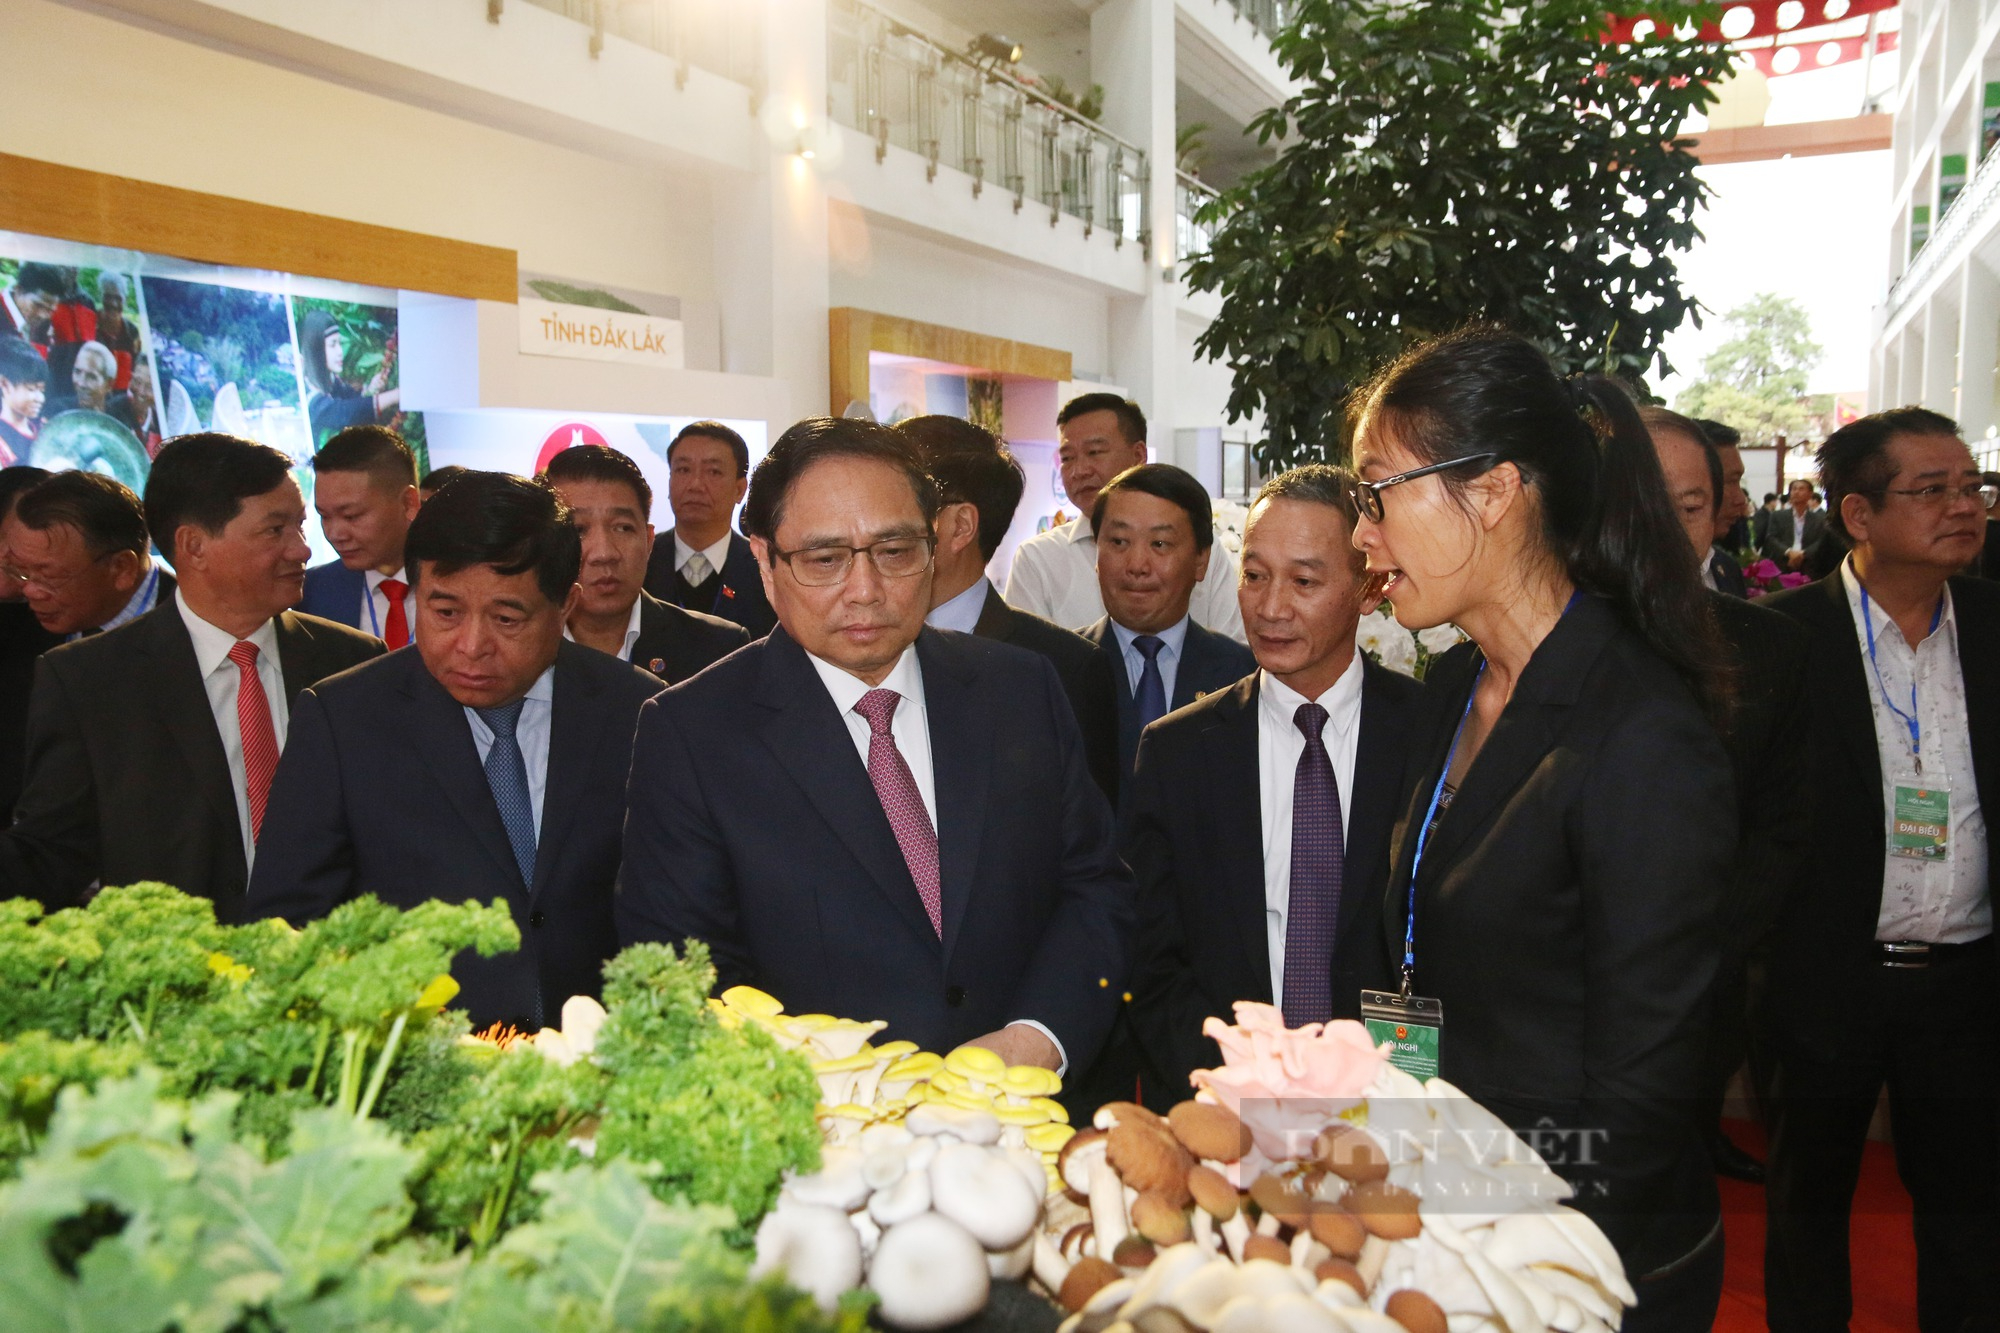 Thủ tướng Chính phủ Phạm Minh Chính cắt băng khai mạc triển lãm ảnh Tây Nguyên xanh hài hòa - bền vững - Ảnh 6.